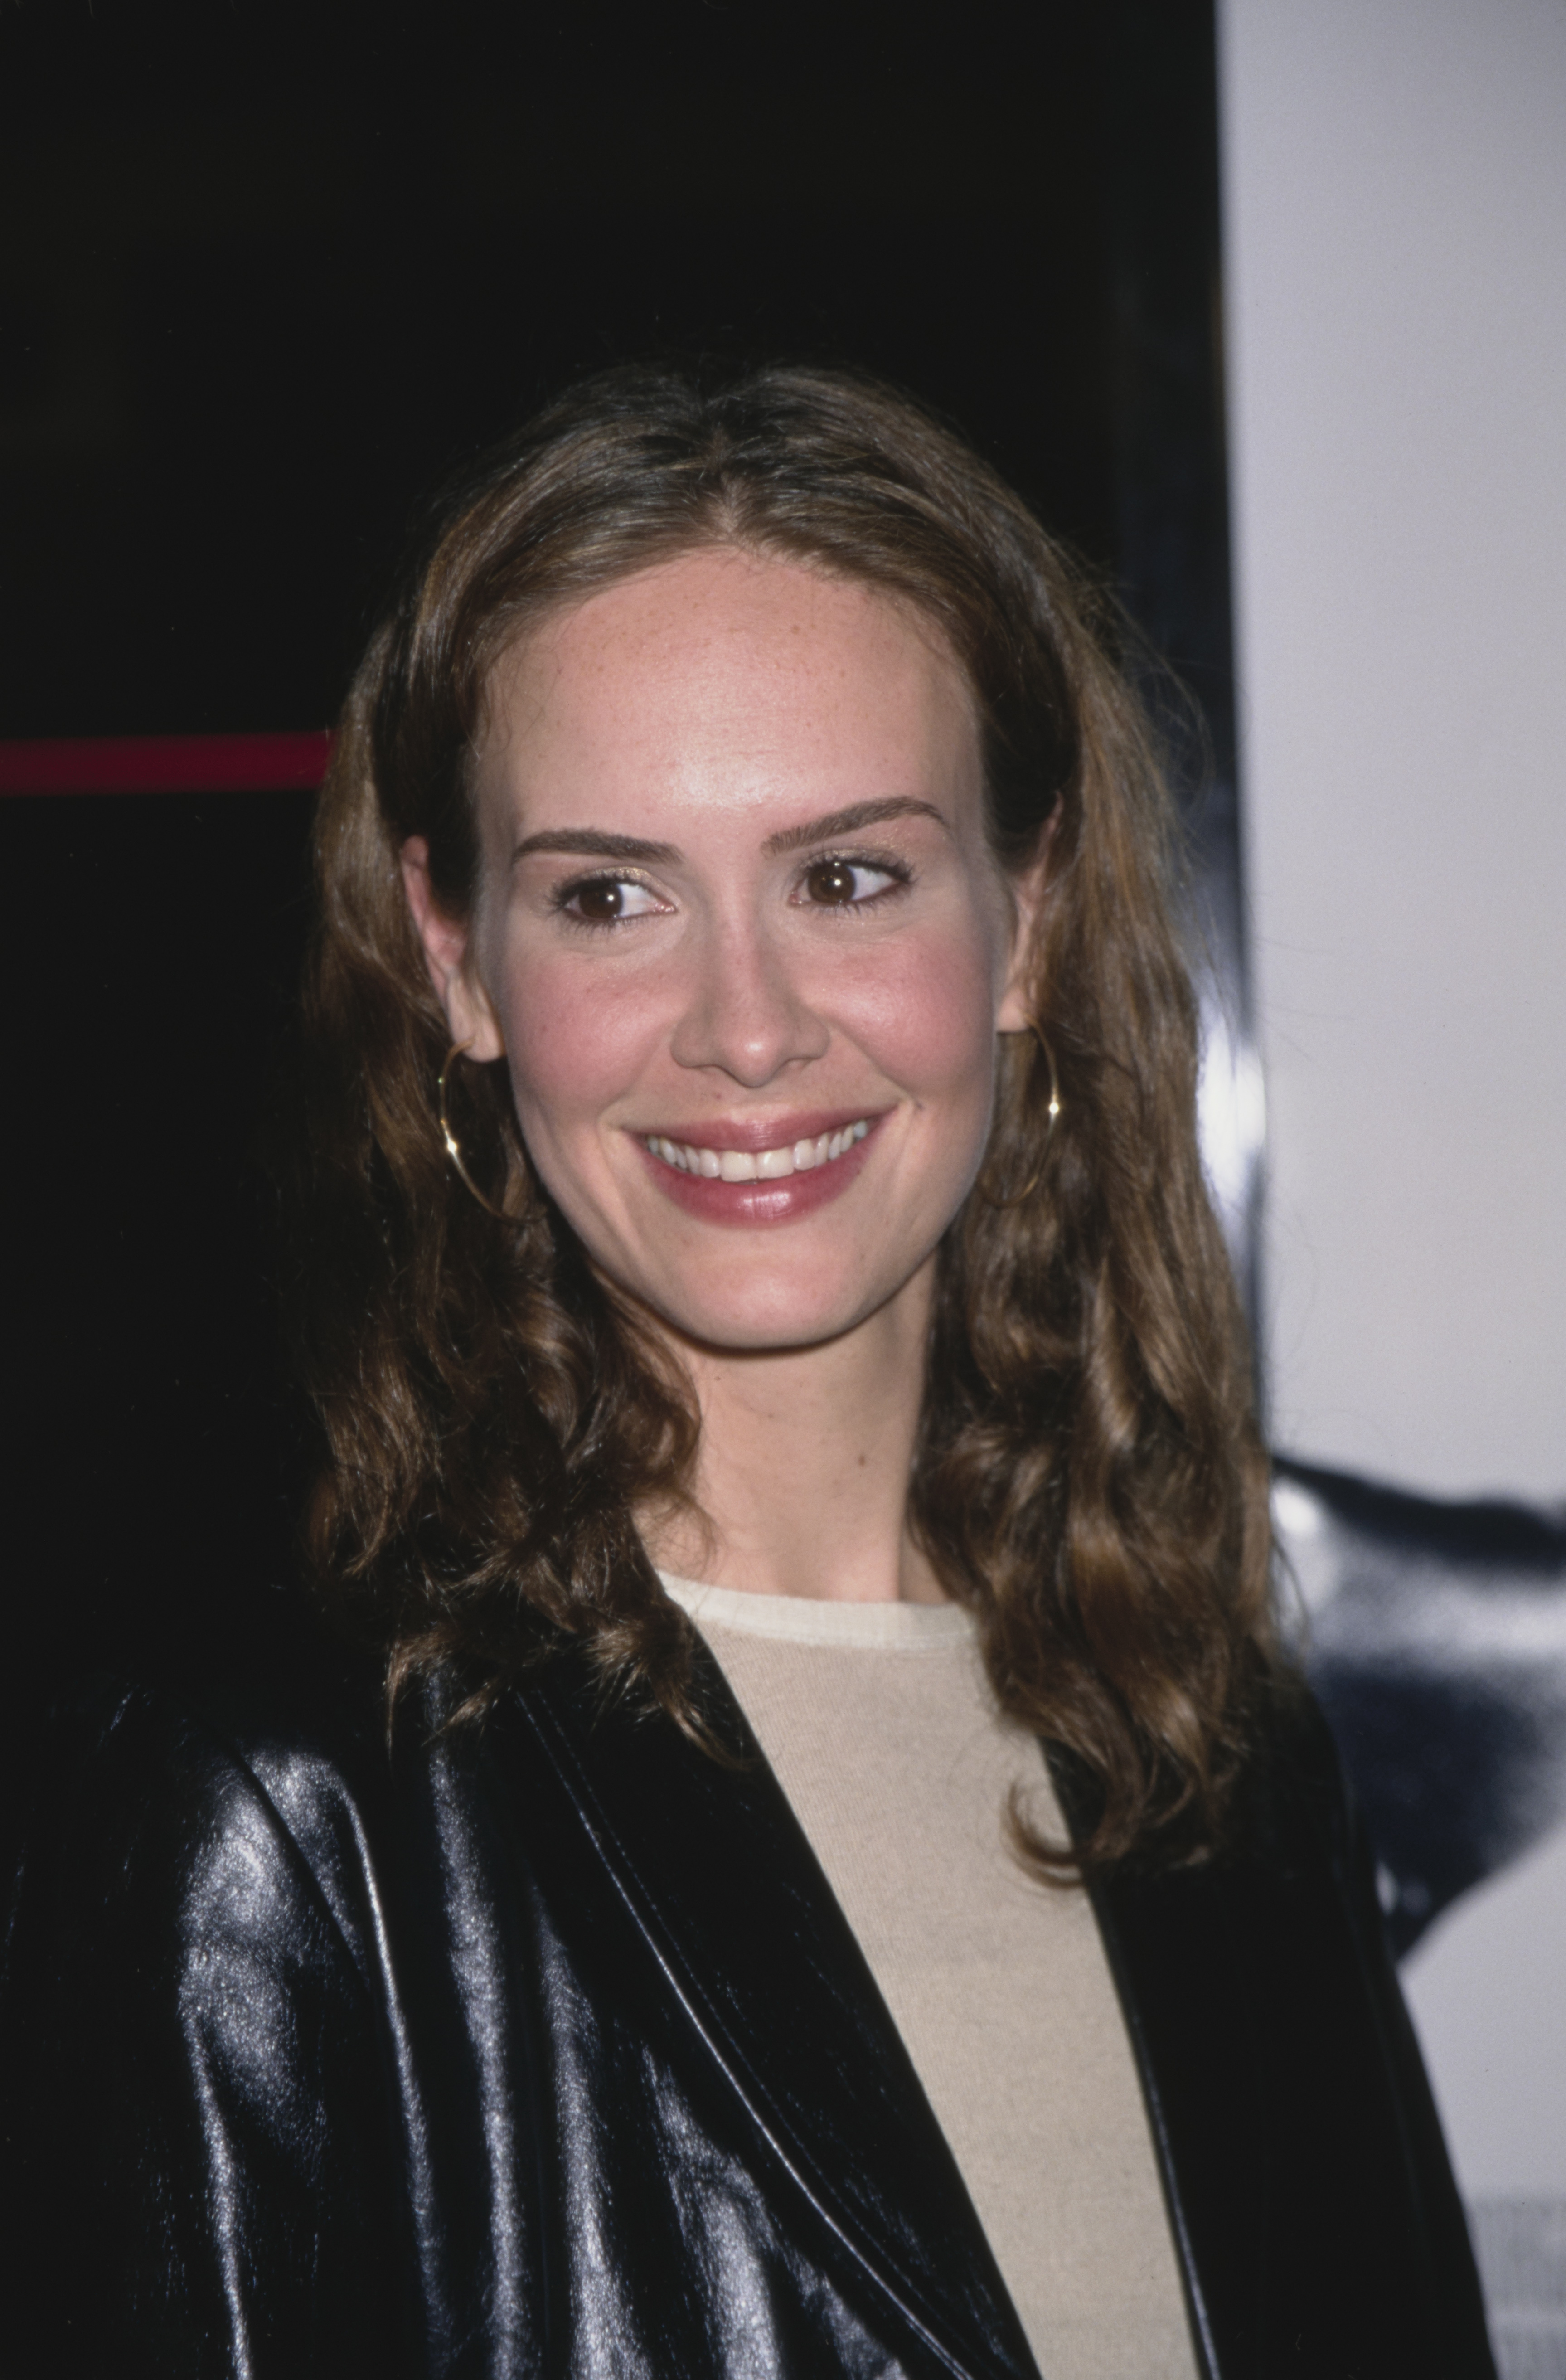 Die Schauspielerin bei der Premiere von "Get Carter" in Los Angeles, Kalifornien, am 4. Oktober 2000. | Quelle: Getty Images